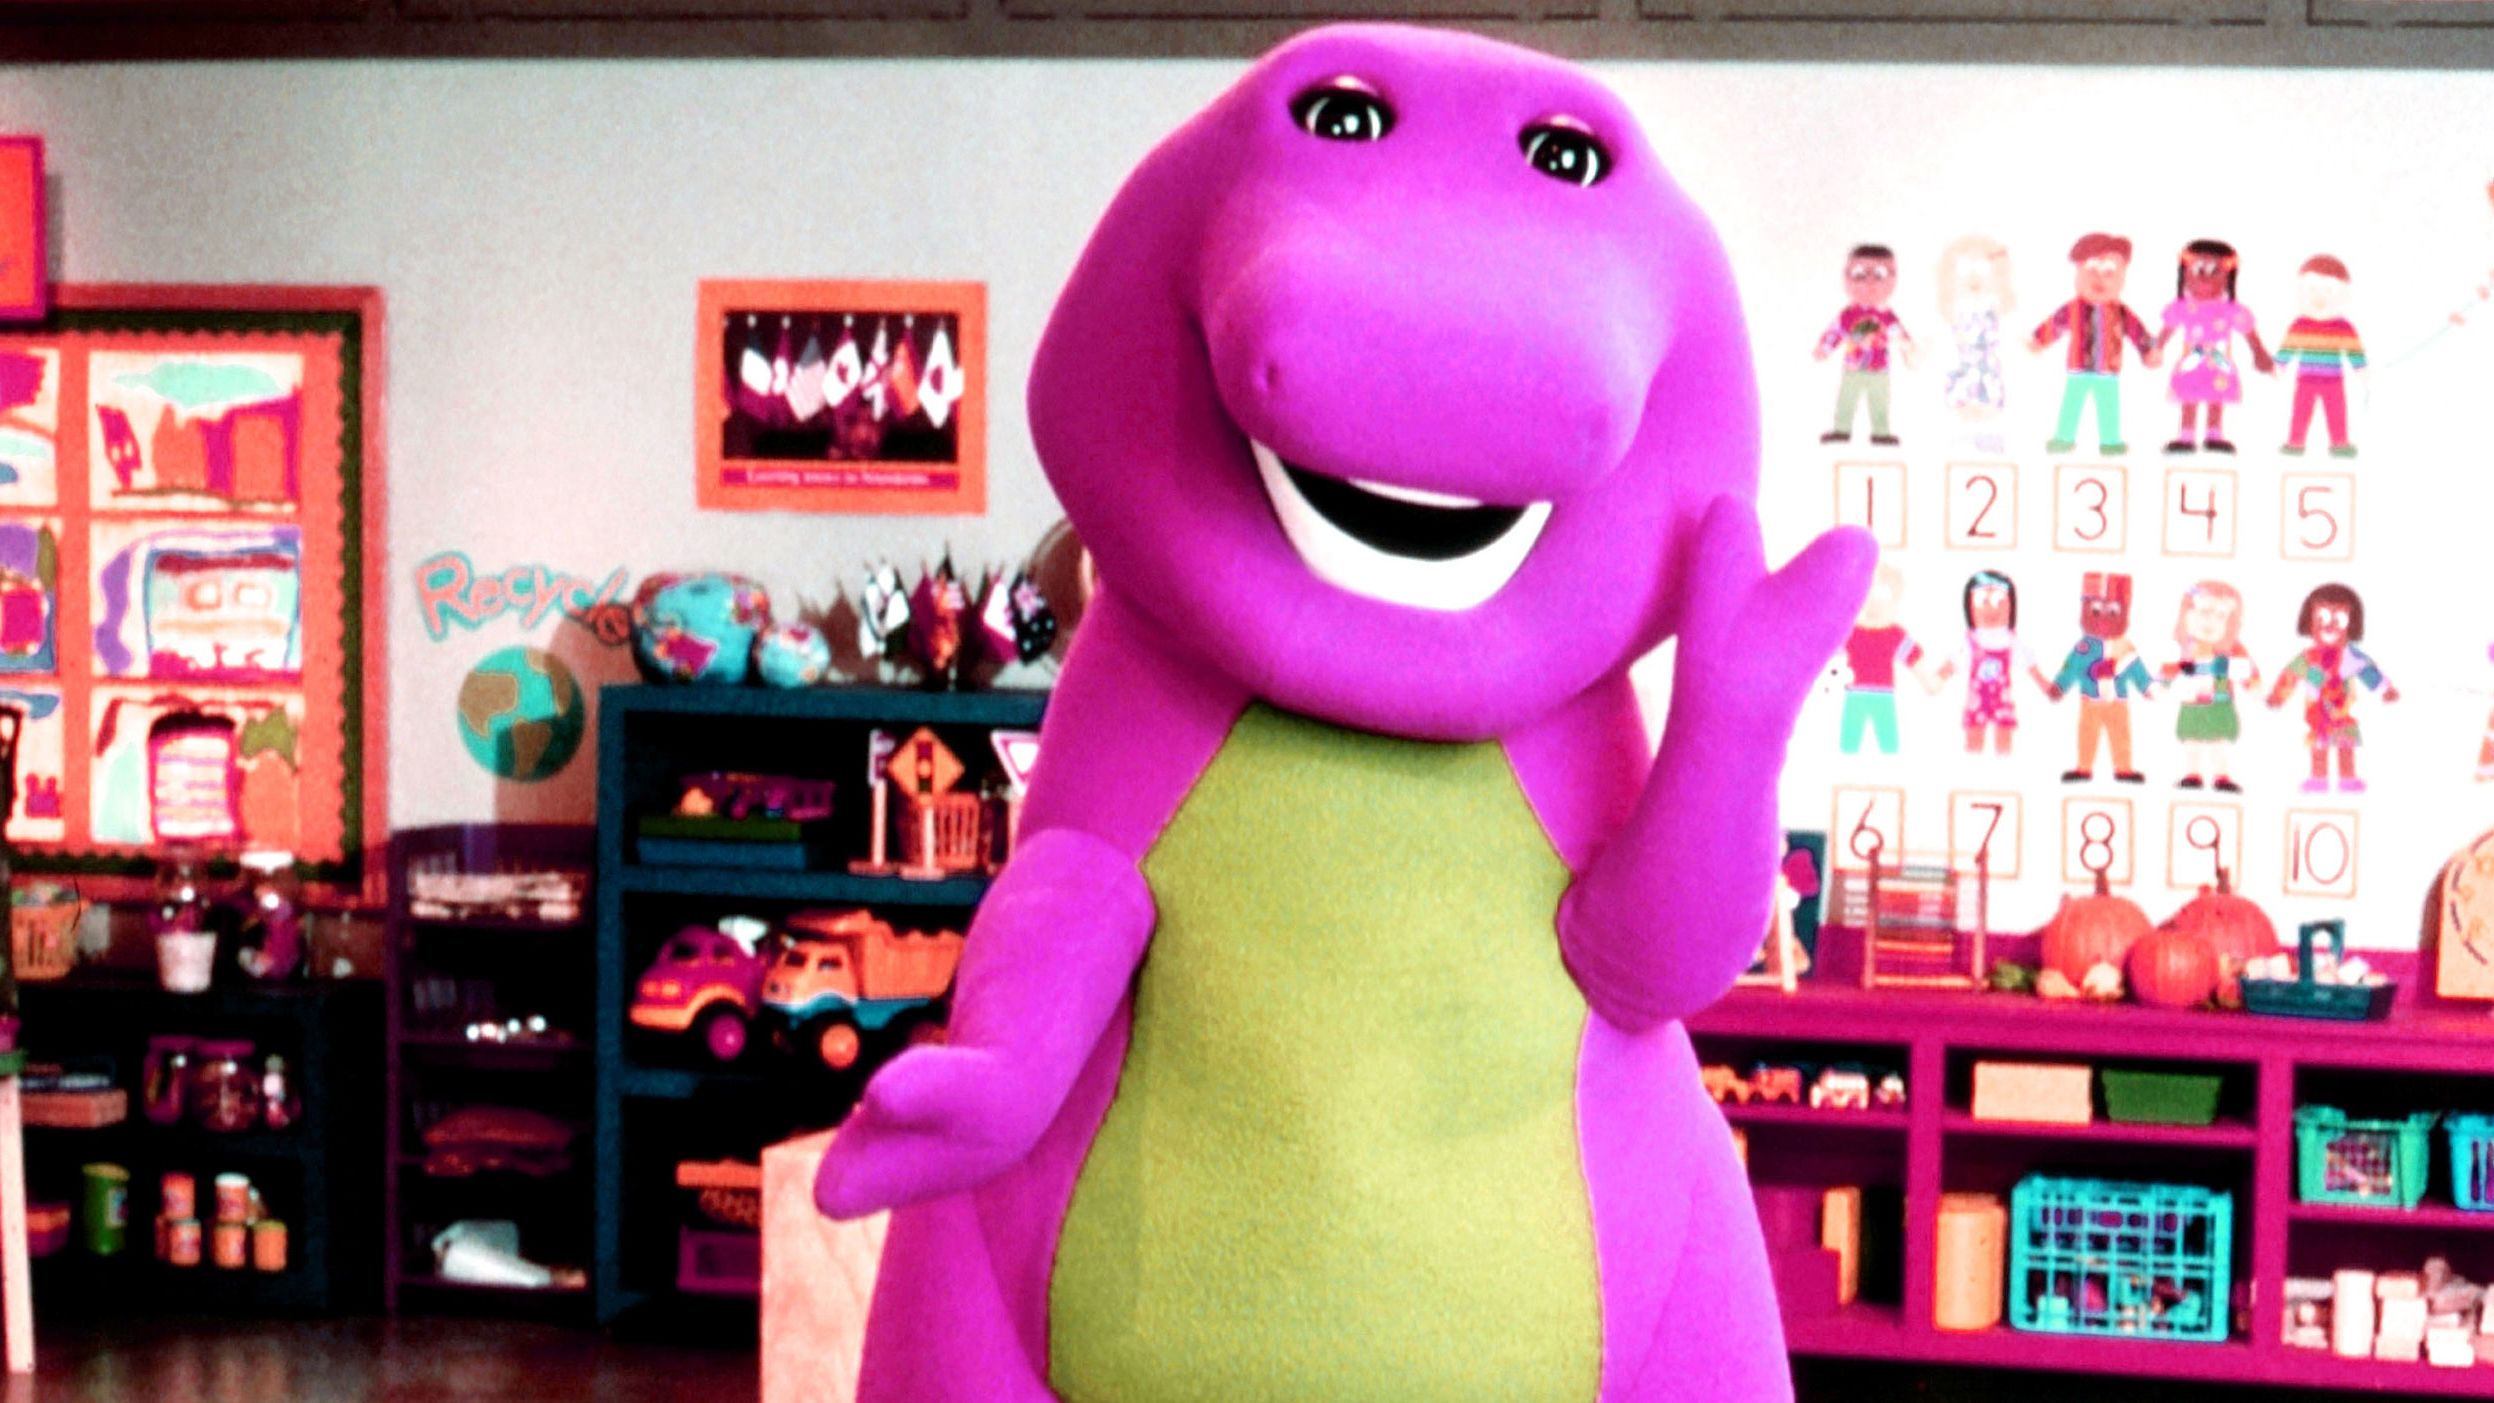 "Barney & Friends" ran from 1992-2009.